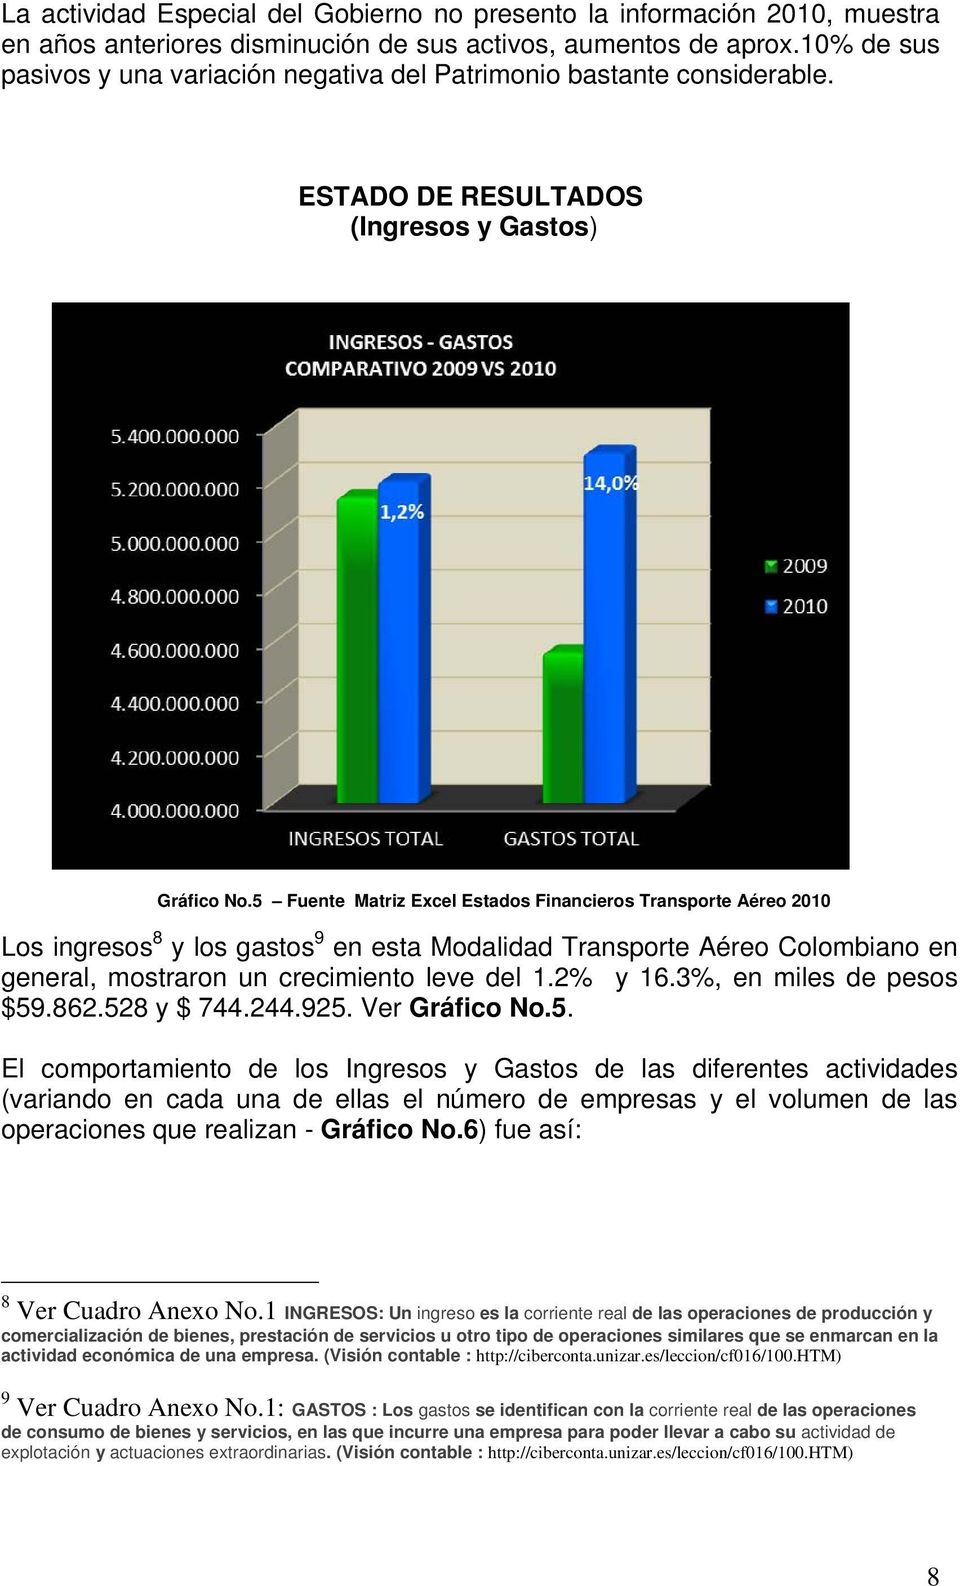 5 Fuente Matriz Excel Estados Financieros Transporte Aéreo 2010 Los ingresos 8 y los gastos 9 en esta Modalidad Transporte Aéreo Colombiano en general, mostraron un crecimiento leve del 1.2% y 16.